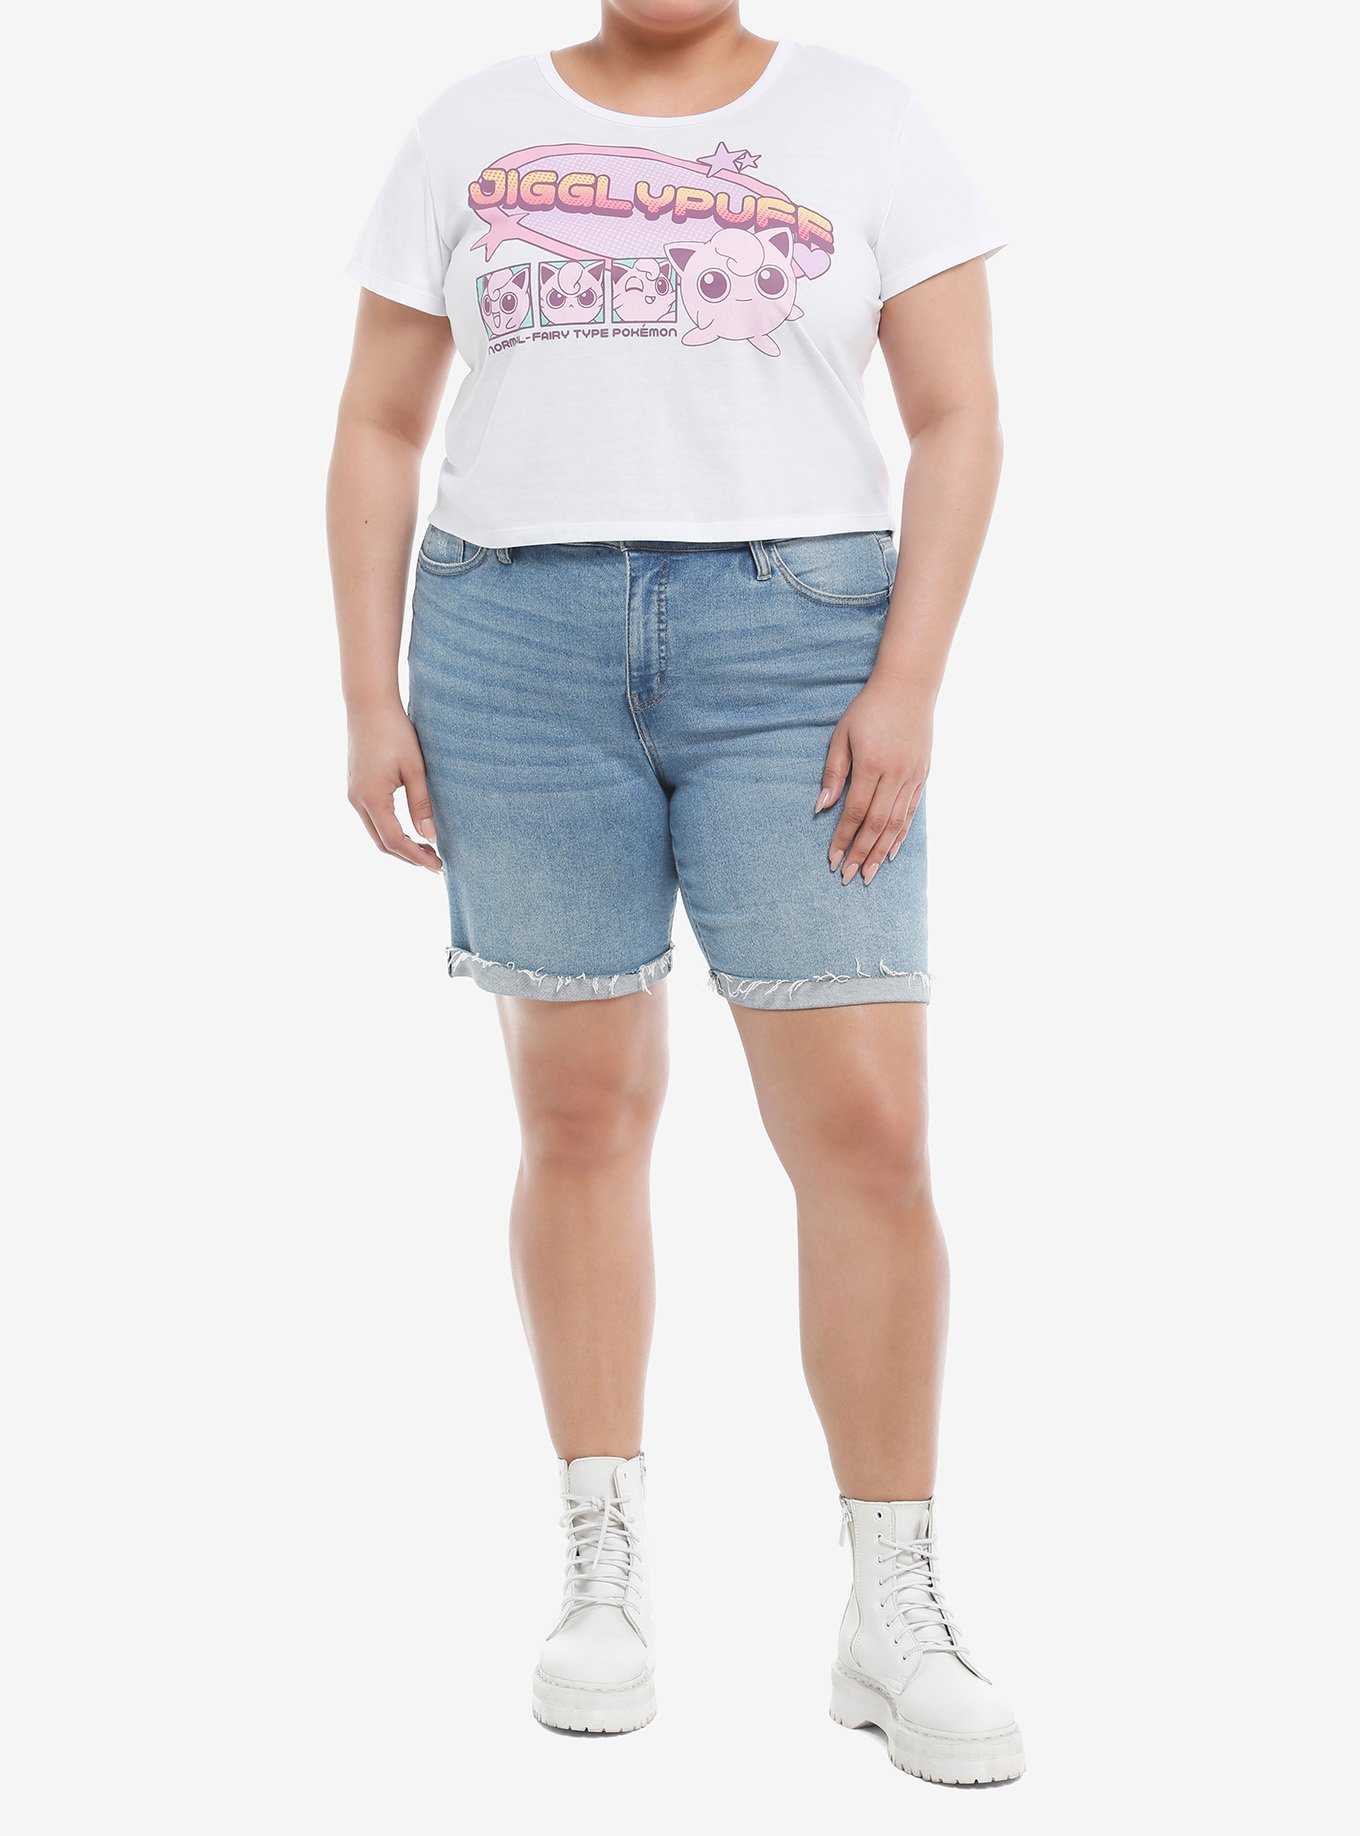 Pokemon Jigglypuff Pastel Girls Baby T-Shirt Plus Size, , hi-res